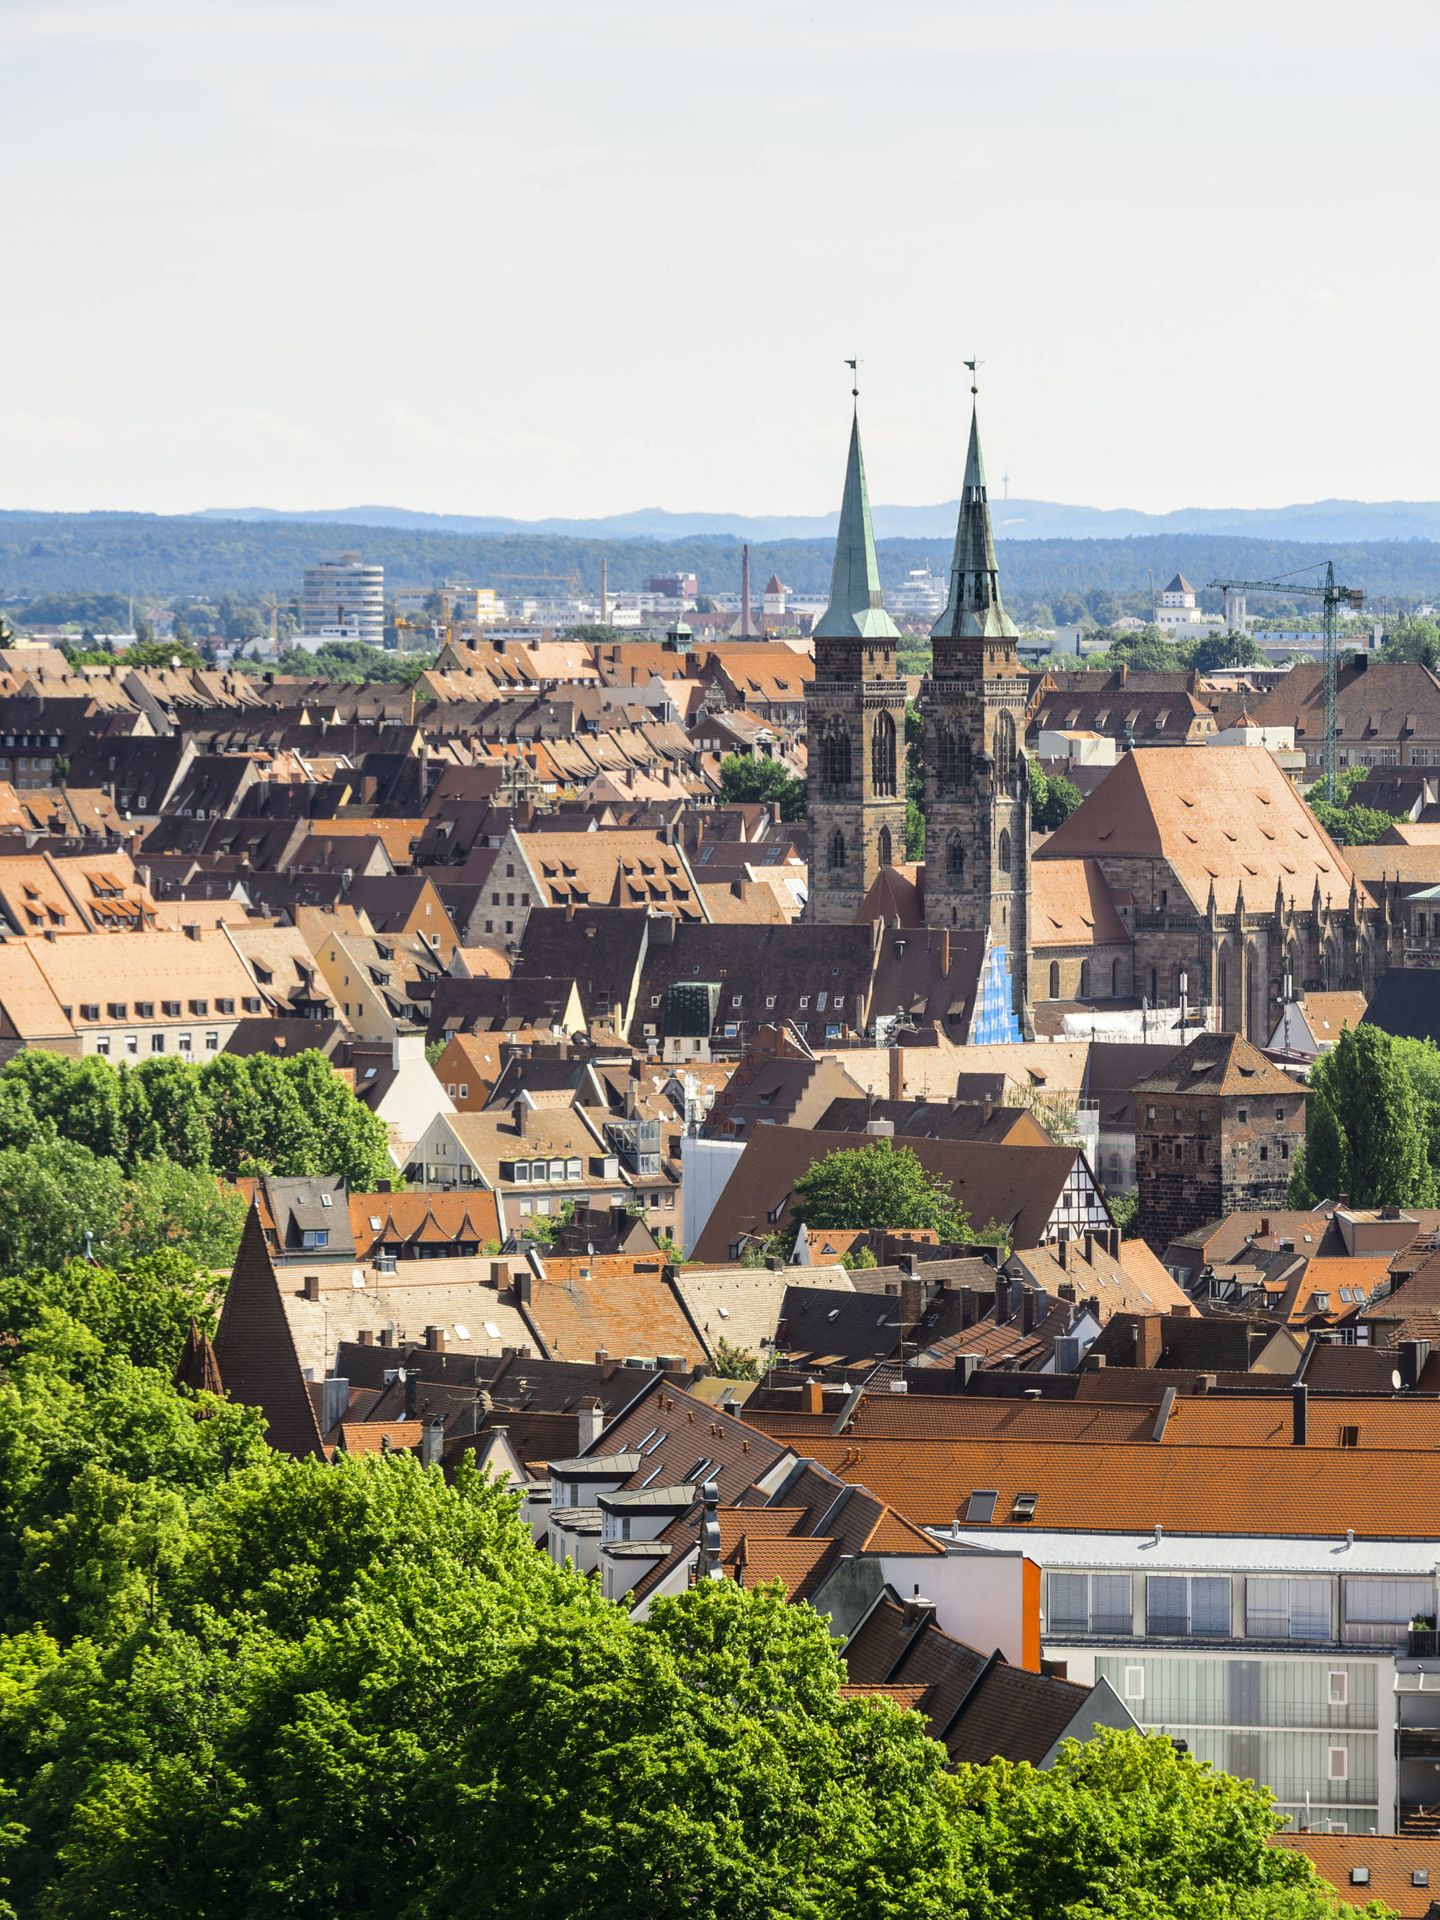 Una vista panorámica de Núremberg. (Foto: ©Uwe_Niklas)